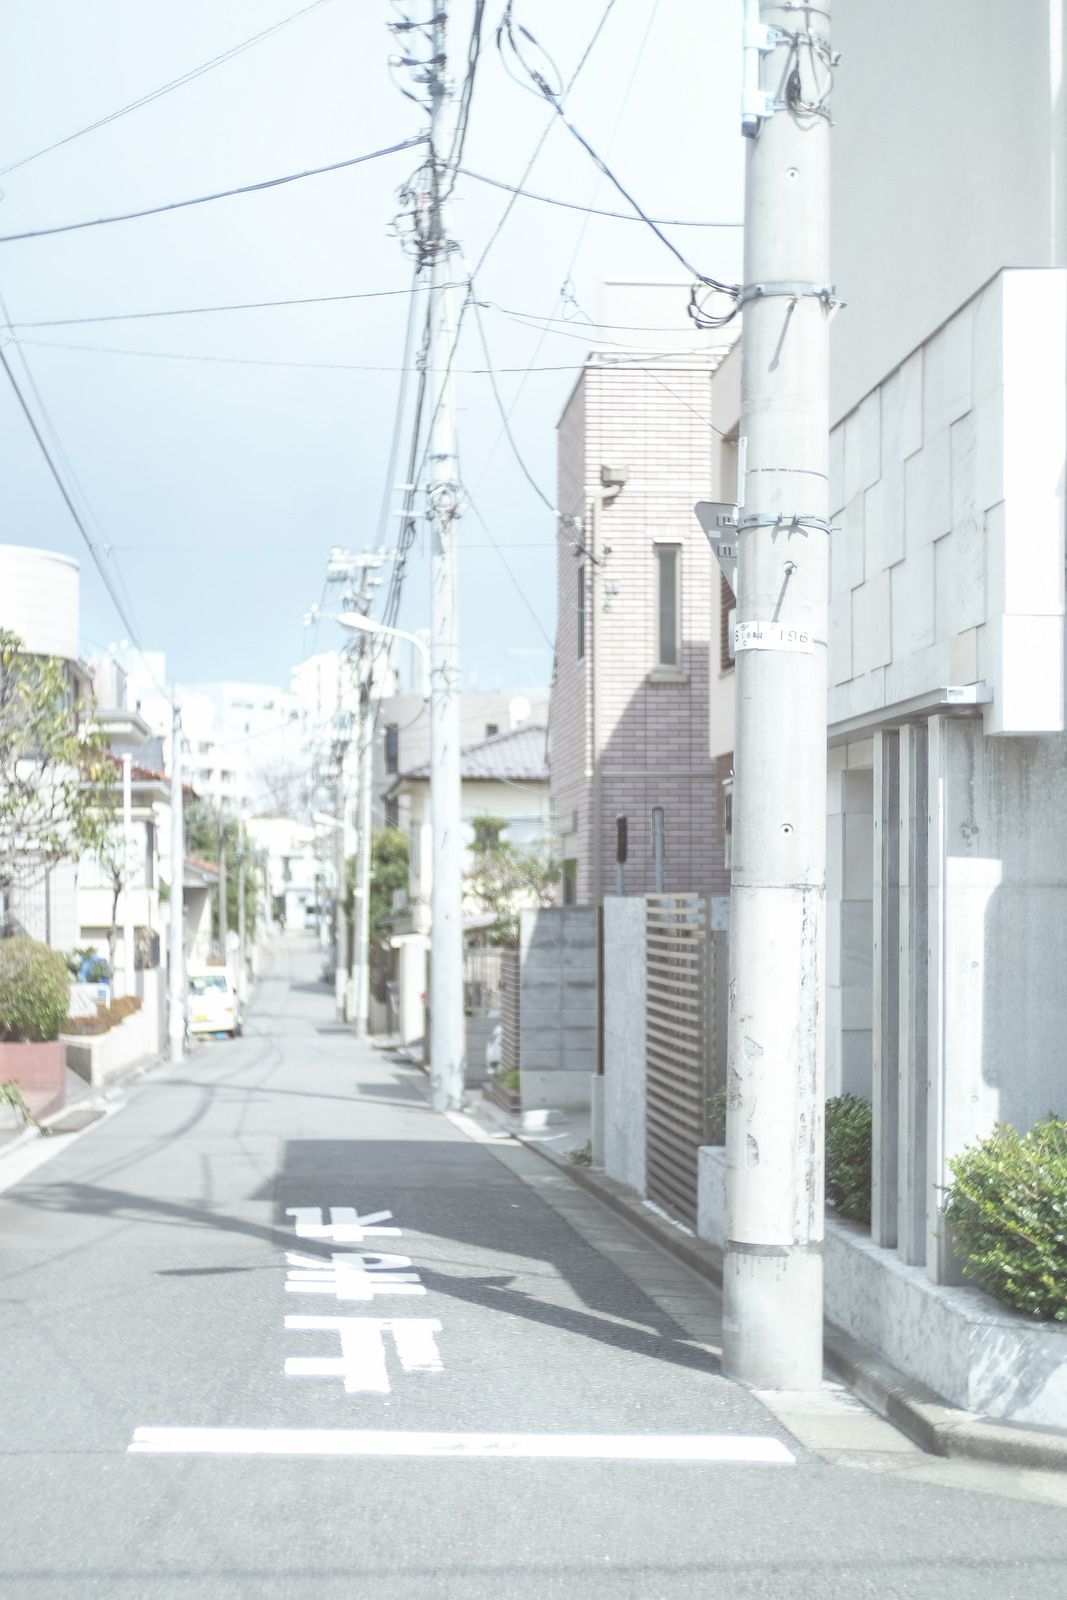 日宅. Aesthetic japan, Landscape wallpaper, White aesthetic